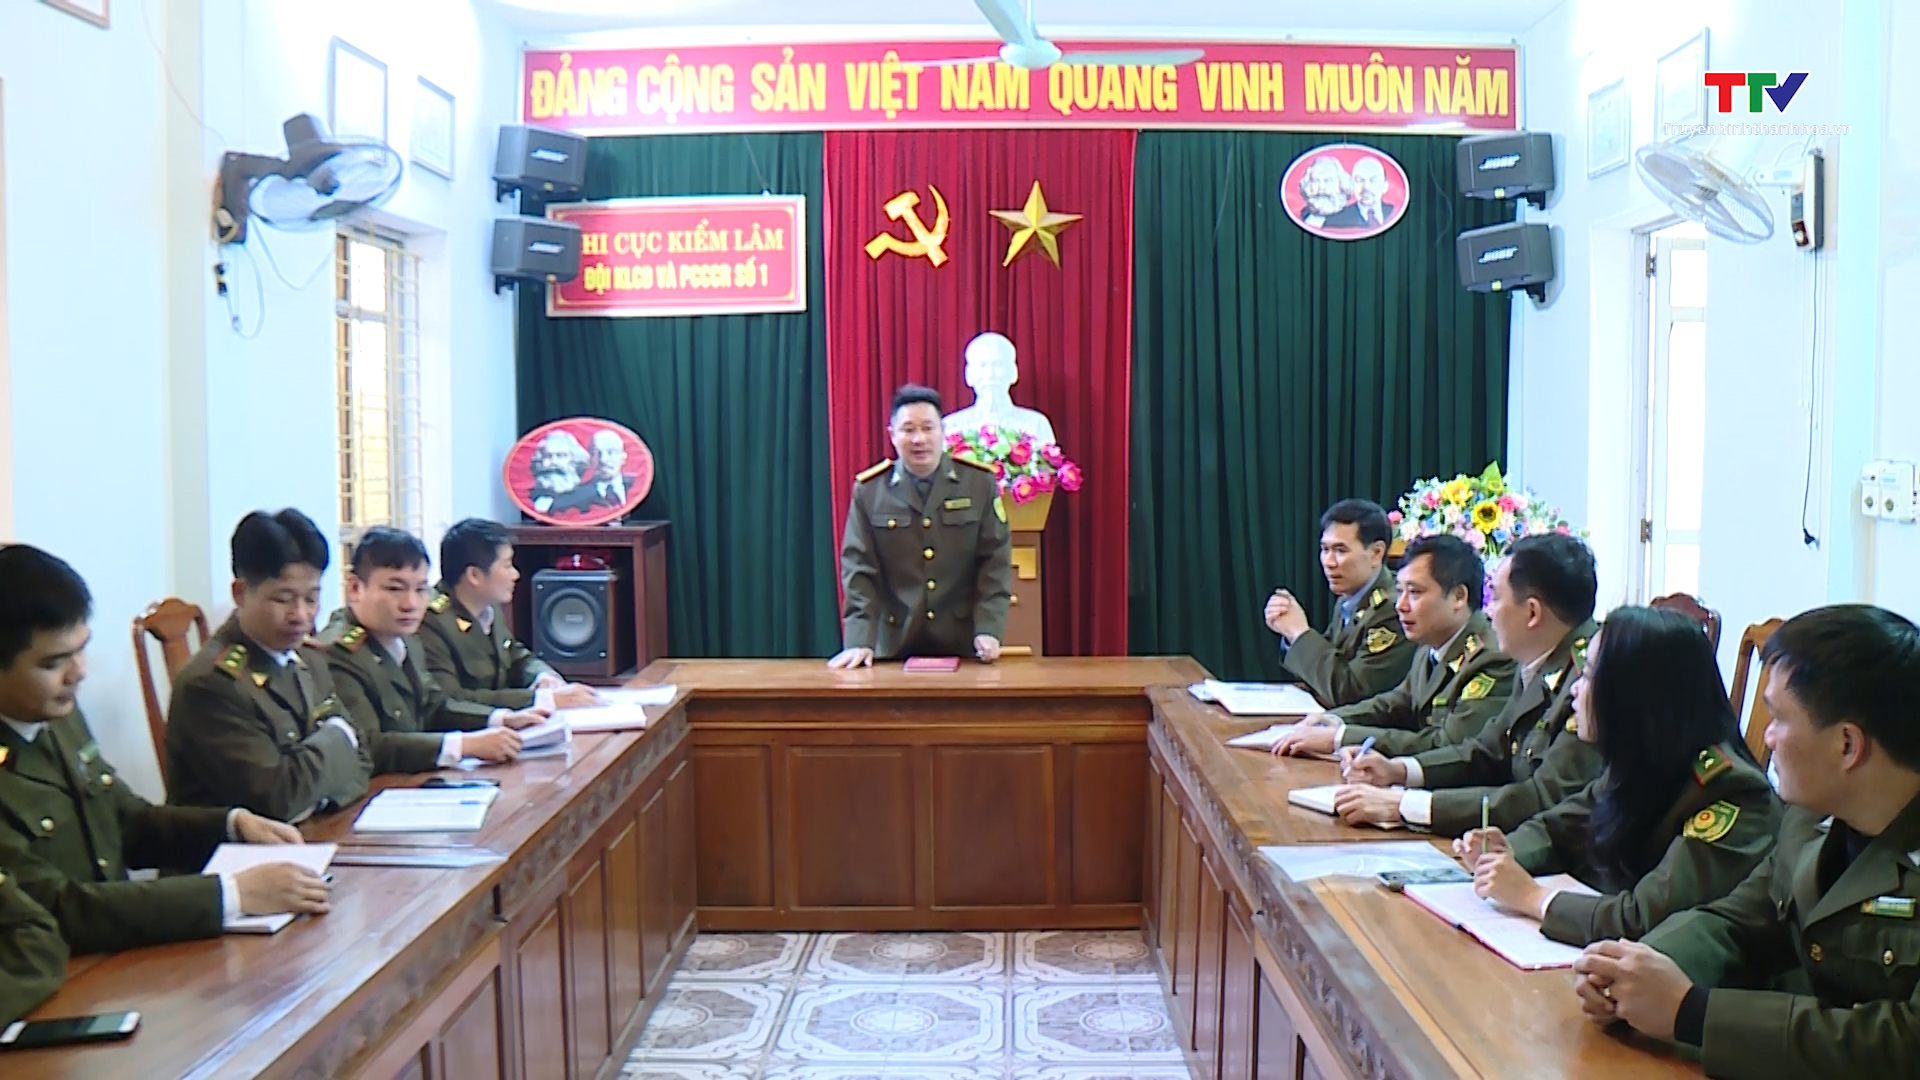 
Xây dựng Đảng bộ Chi cục Kiểm lâm Thanh Hoá trong sạch, vững mạnh - Ảnh 2.